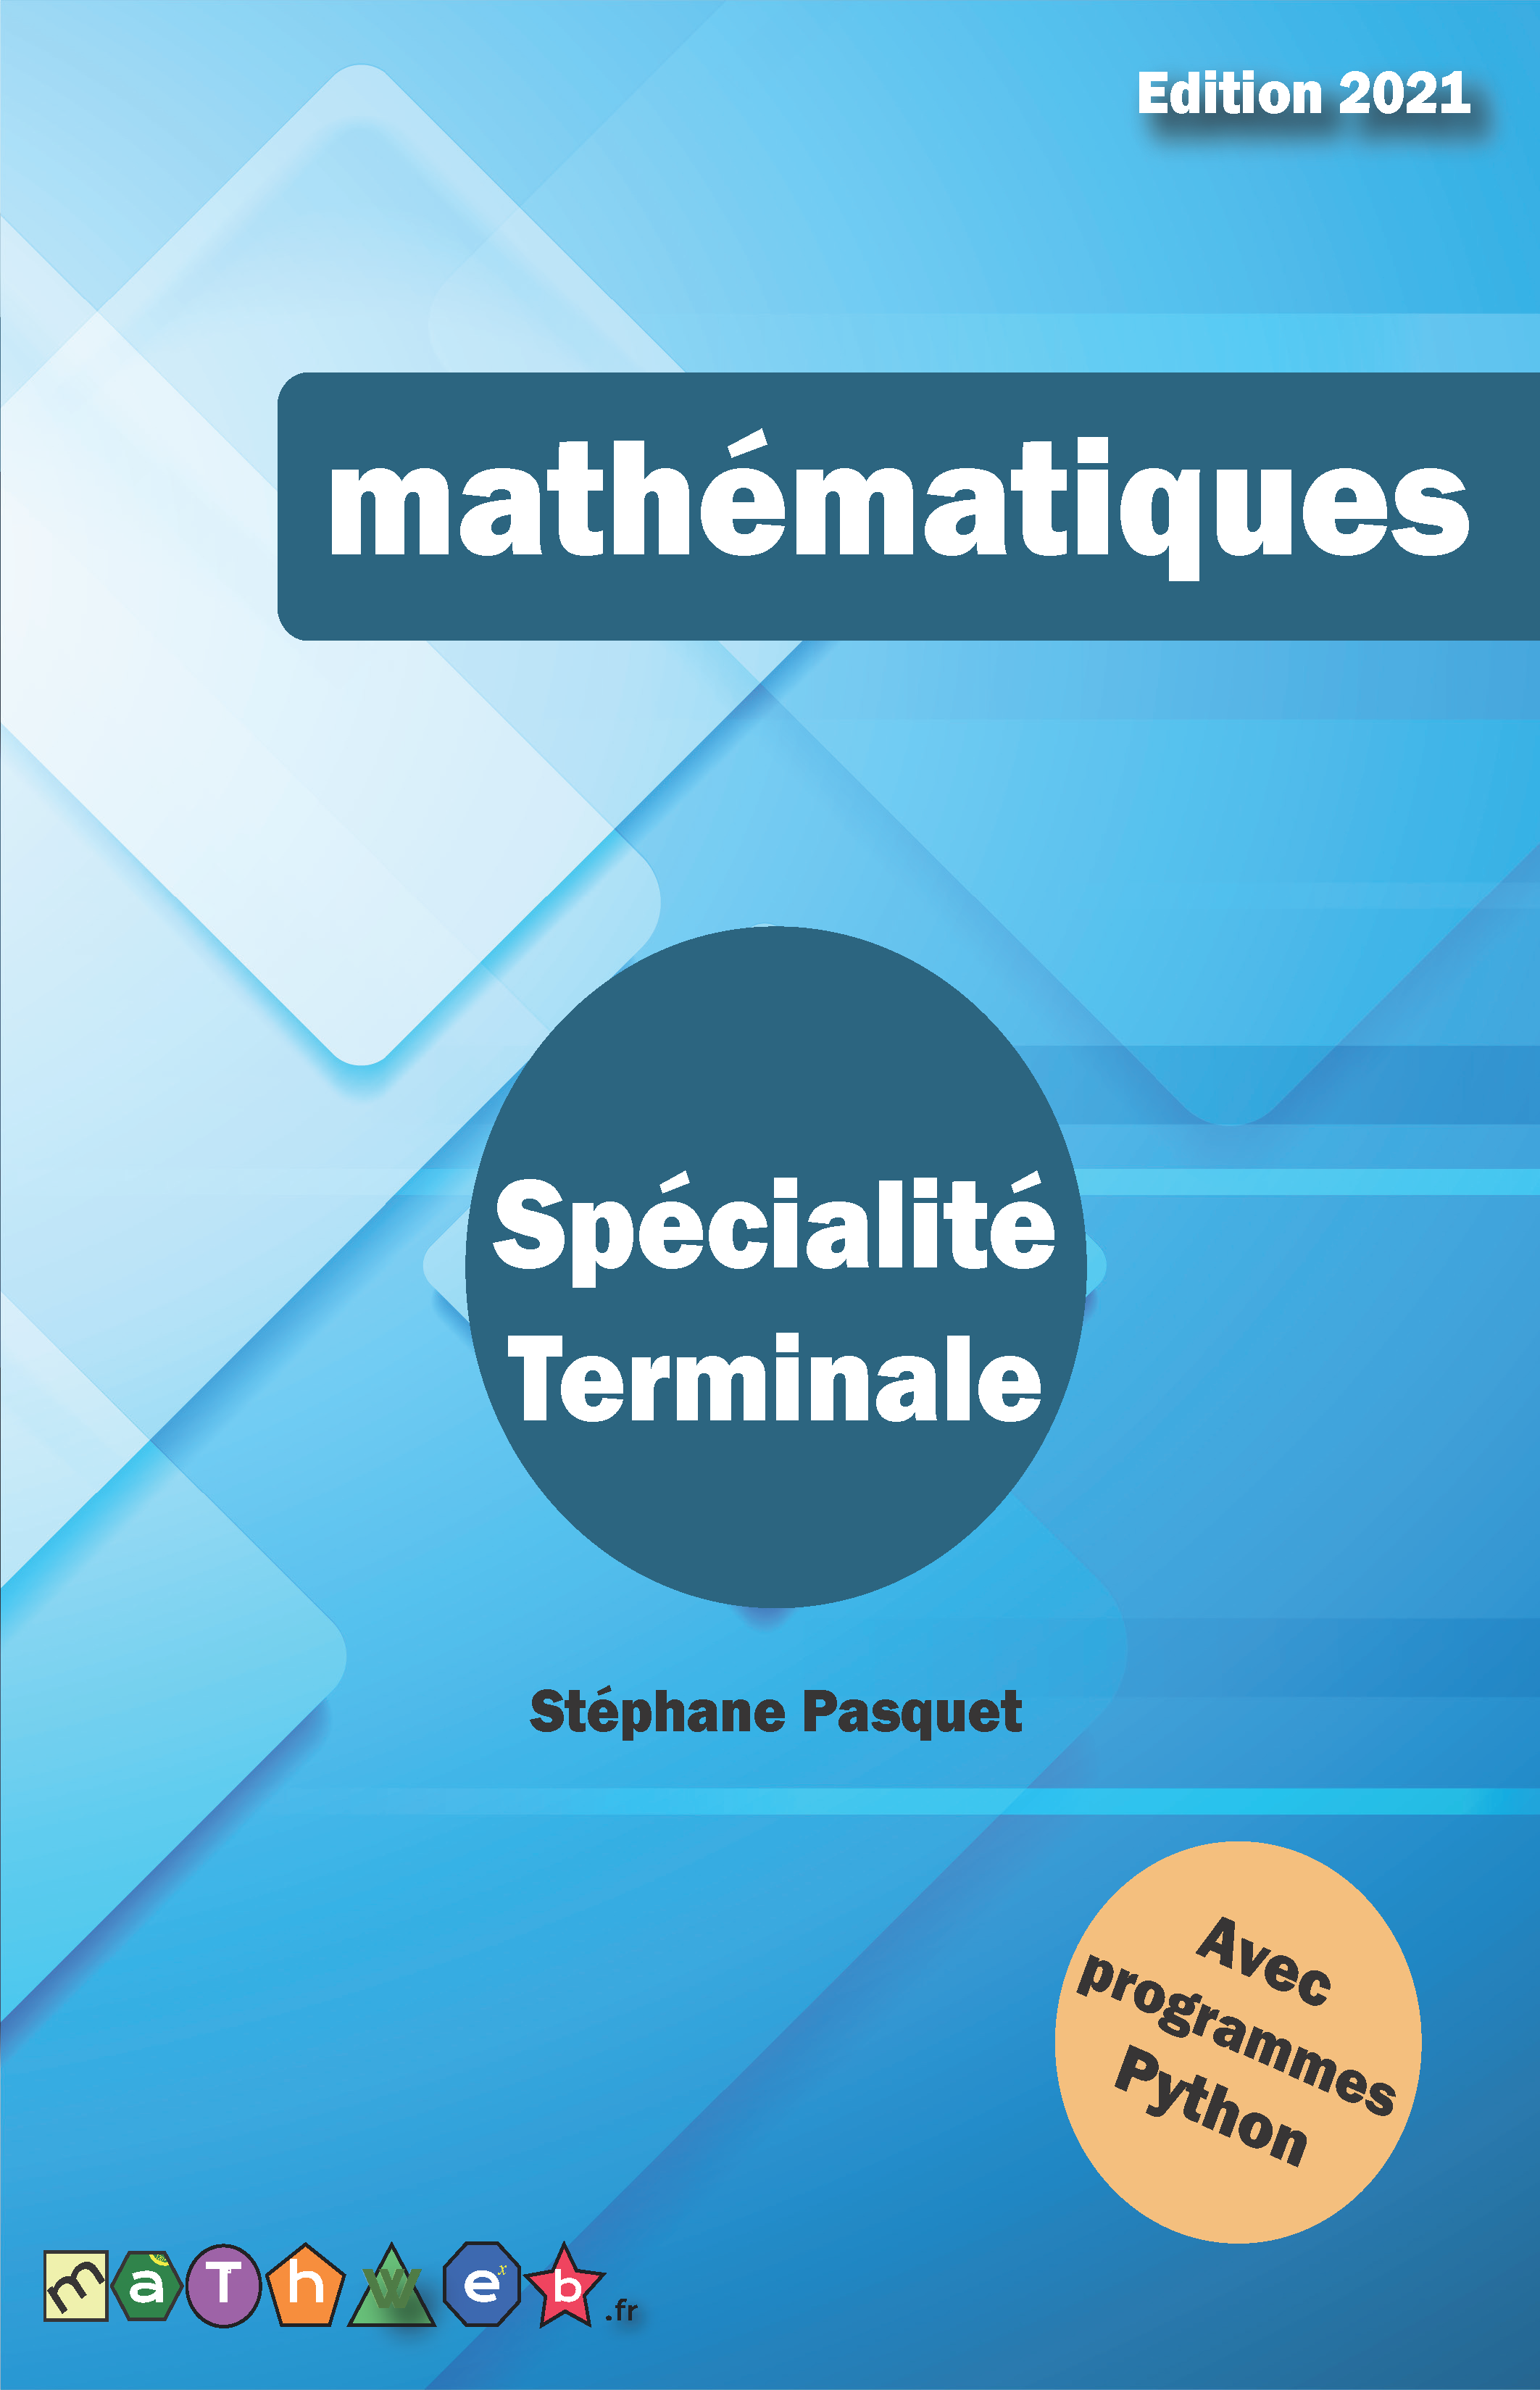 Fiche De Révision Maths Terminale 2021 Livre de cours et d'exercices corrigés (Terminale spécialité) édition 2021